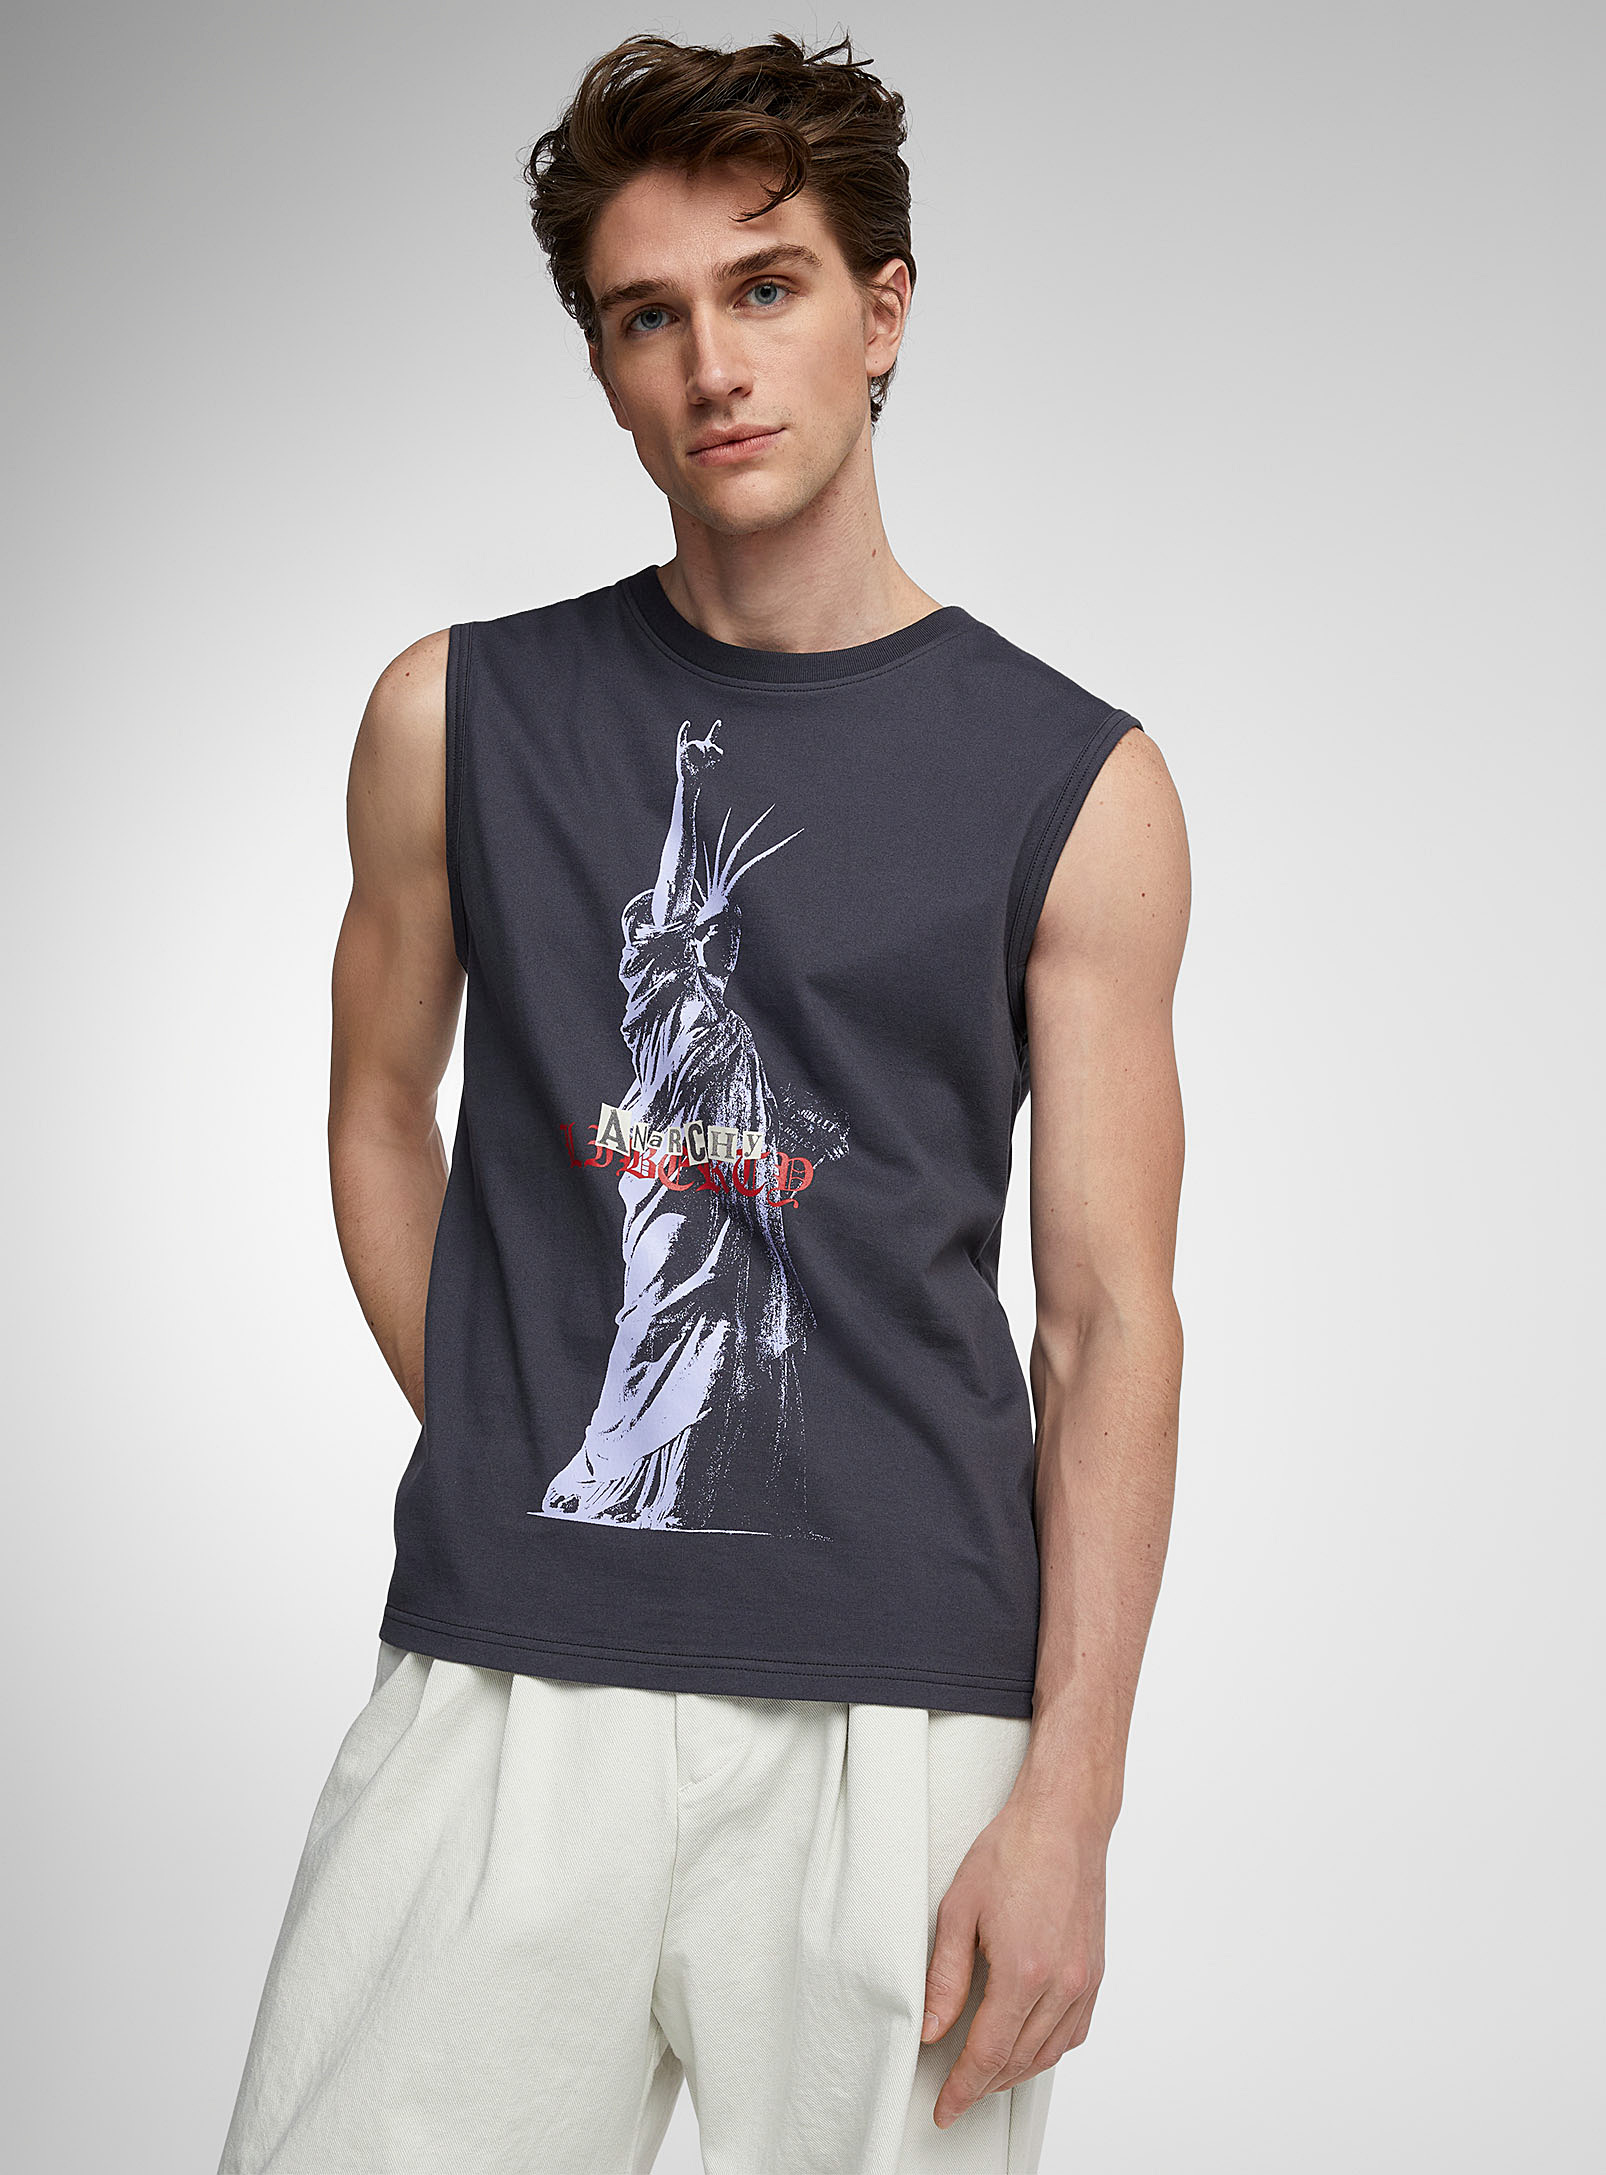 Tee Library - Le t-shirt sans manches Statue de la Liberté